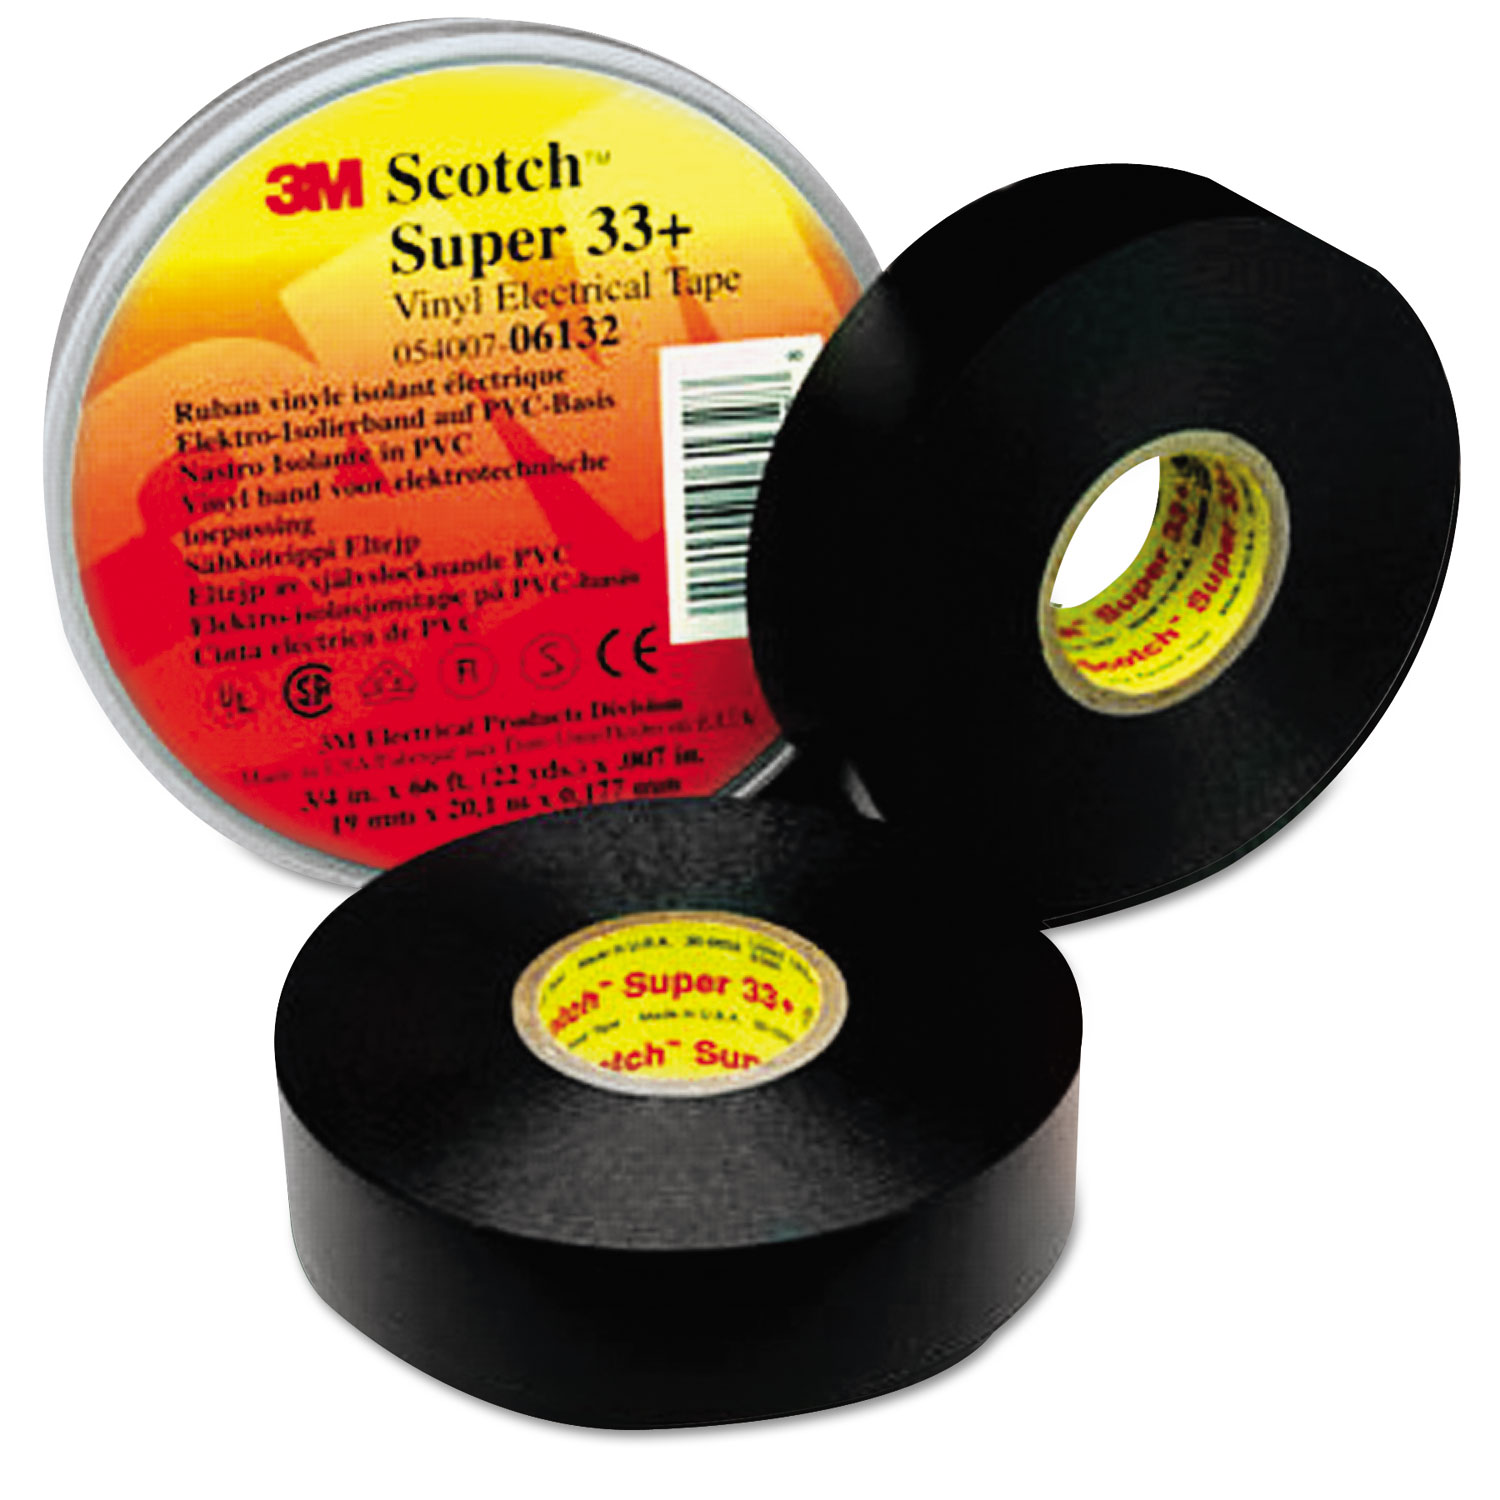 Scotch 33+ Super Vinyl Electrical Tape, 3/4 x 44ft